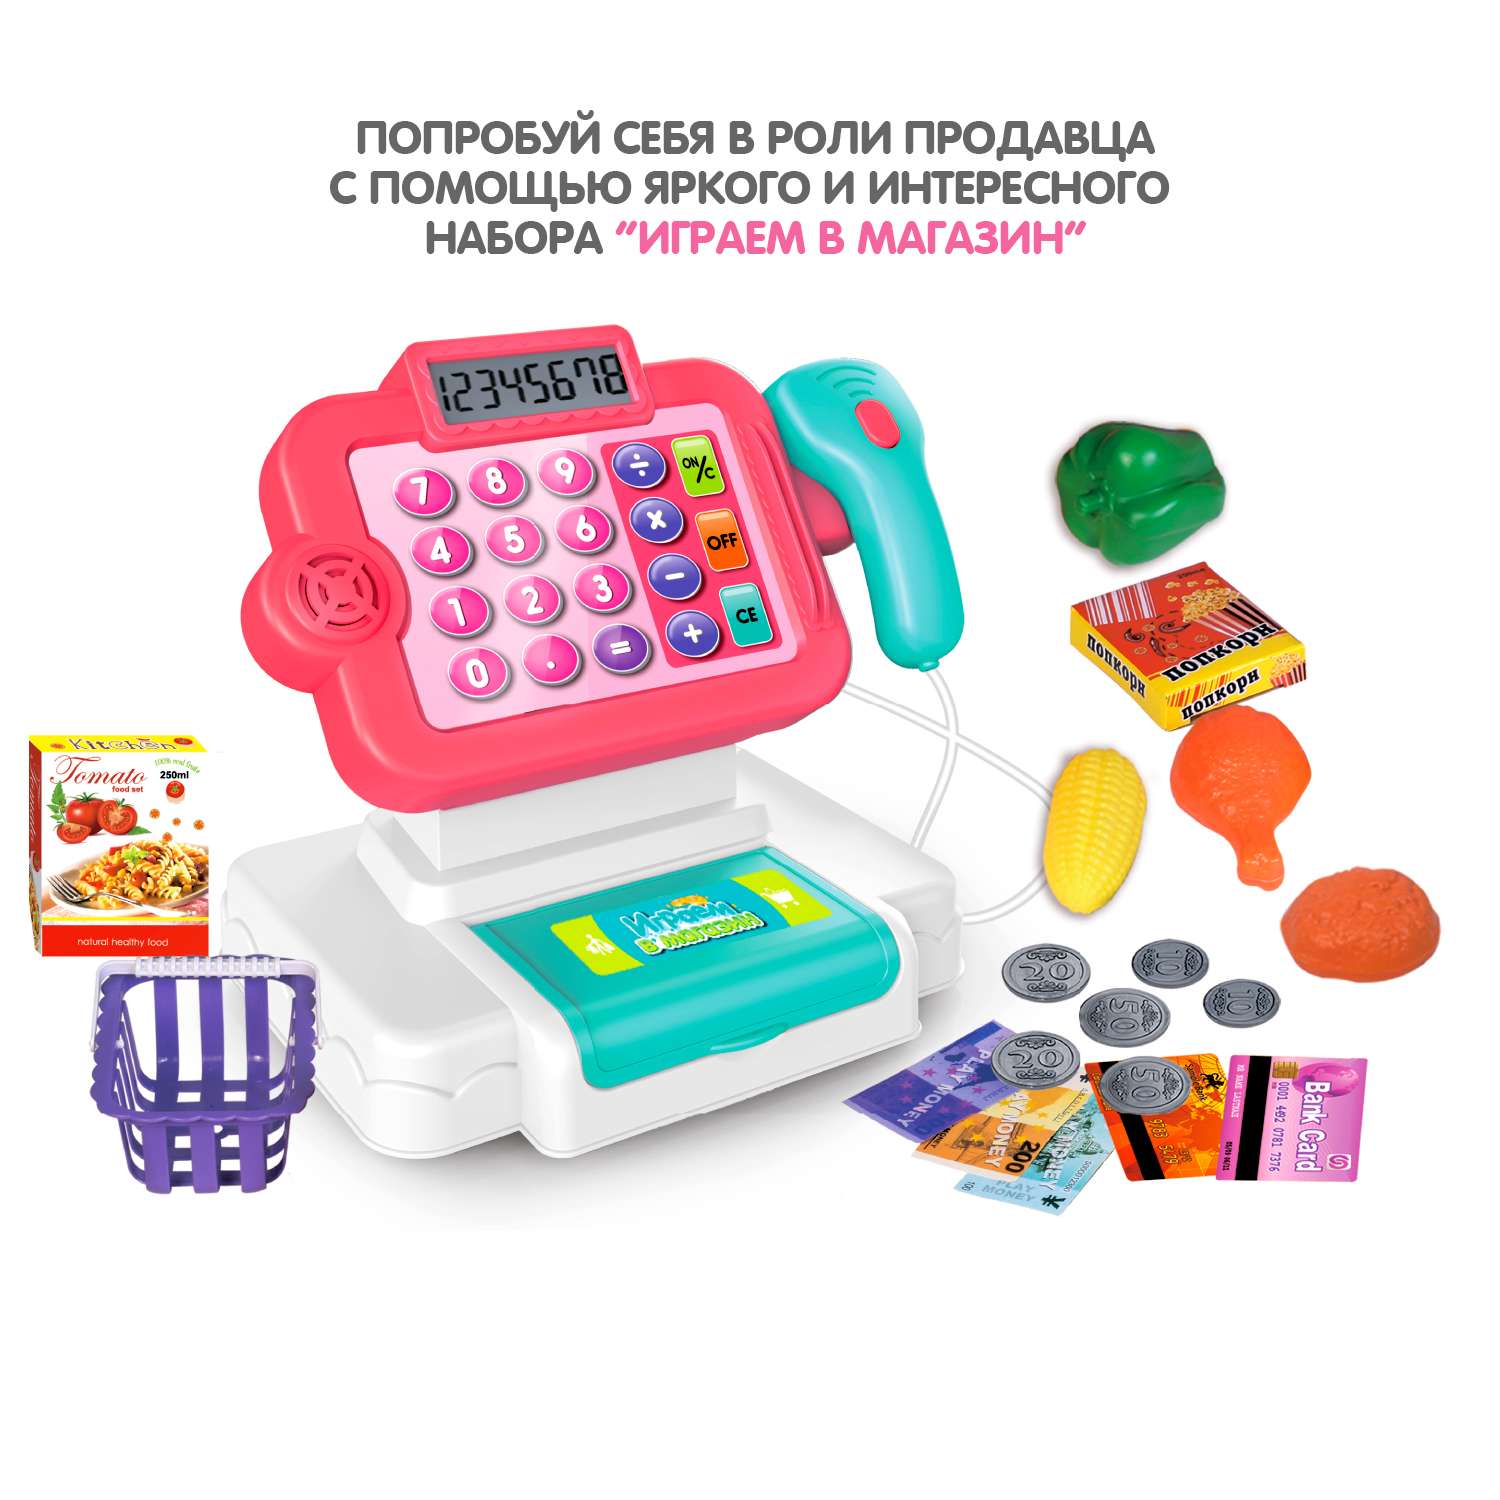 Игровой набор касса BONDIBON Играем в магазин со сканером калькулятором и аксессуарами 21 предмет - фото 6